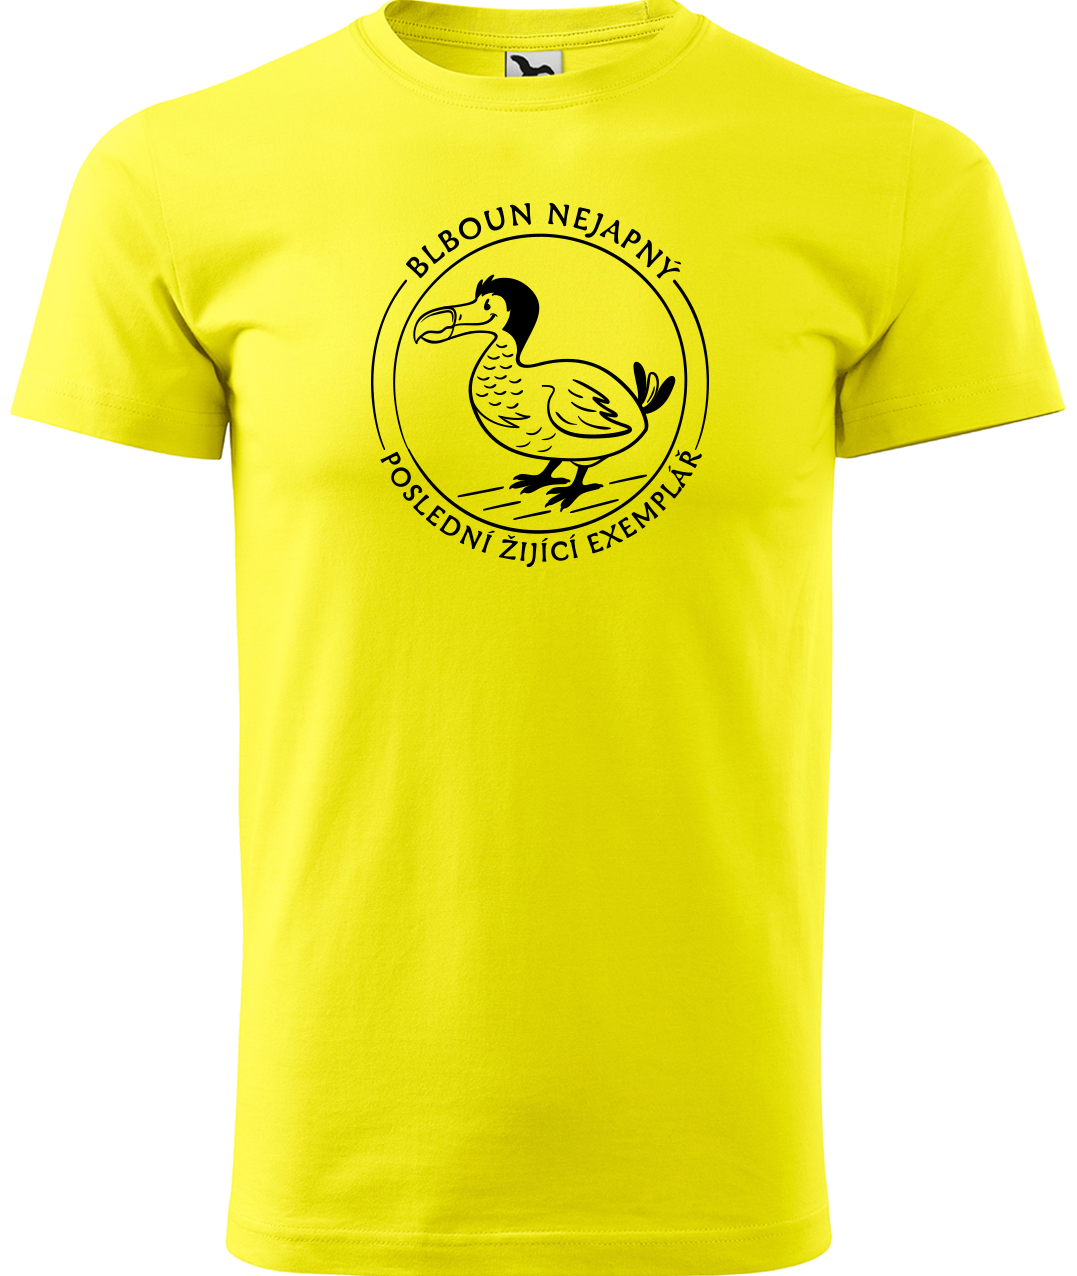 Vtipné tričko - Blboun nejapný Velikost: XL, Barva: Žlutá (04)